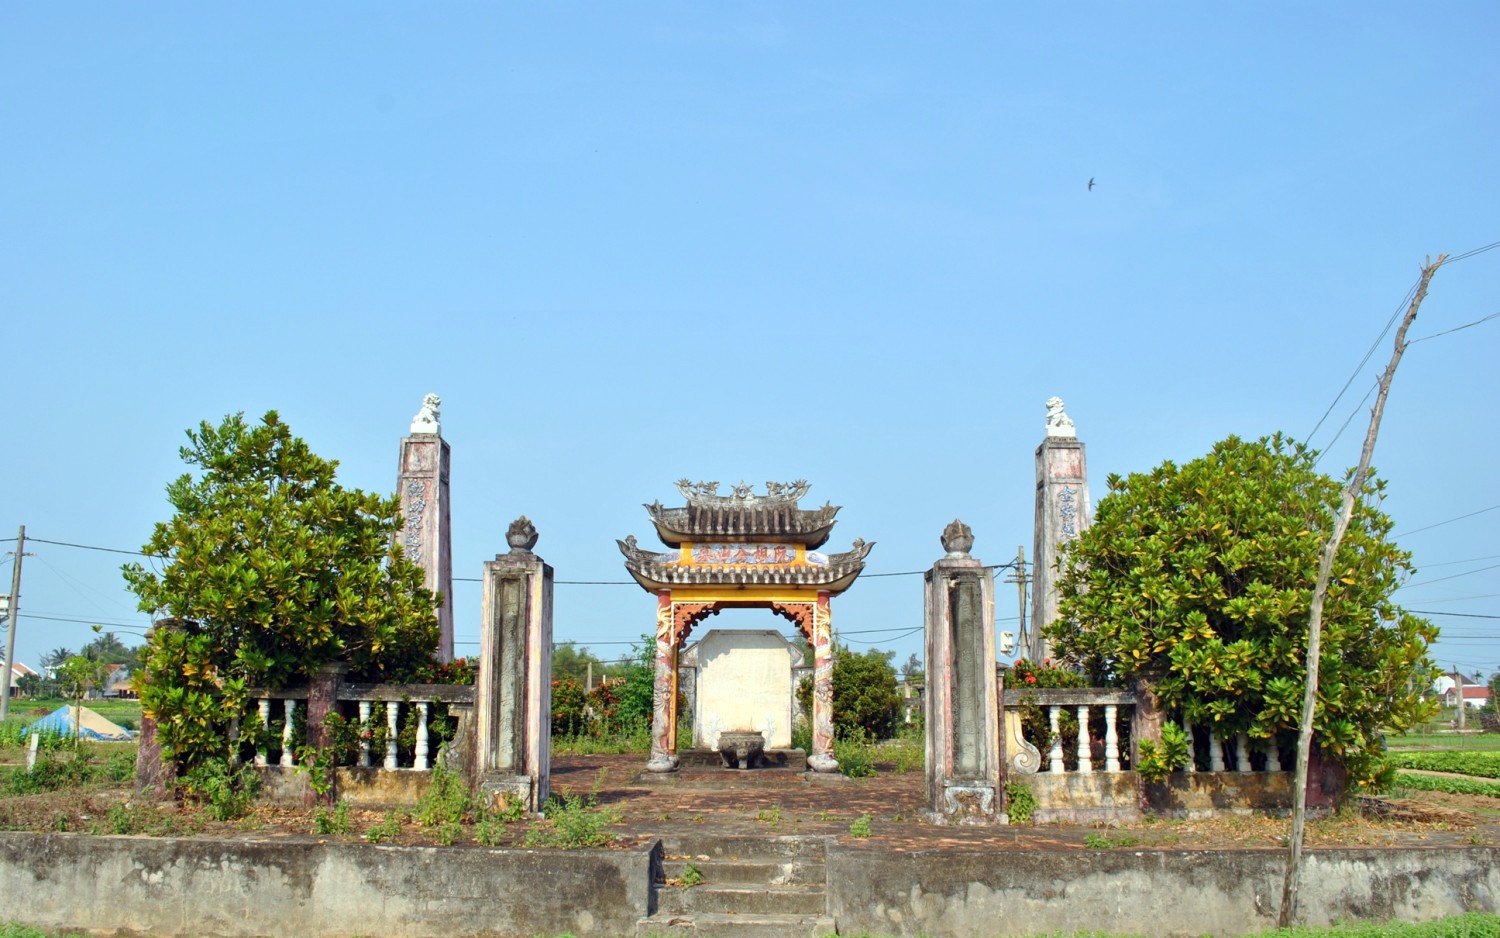 Cử nhân khai khoa đất Hội An, sau khi mất phong Thượng thư, mộ cổ vẫn còn ở Quảng Nam